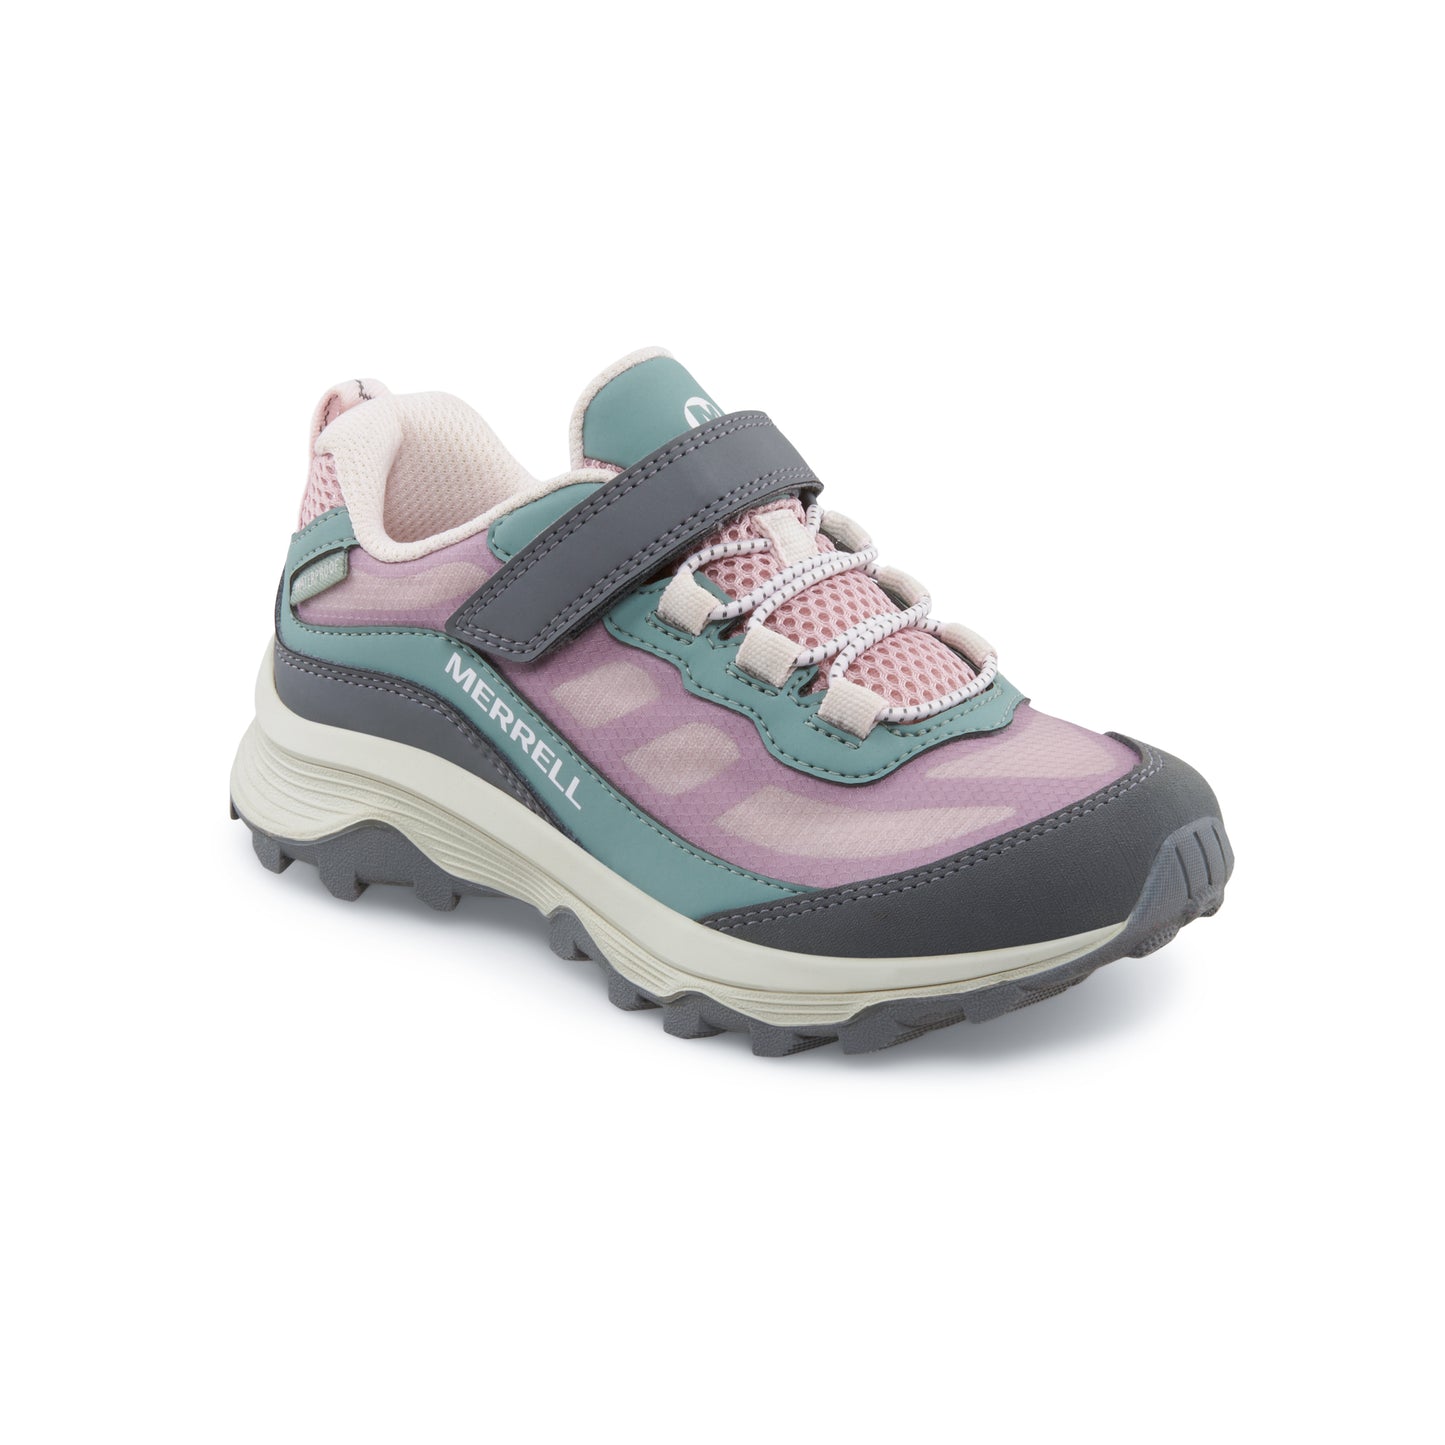 Moab Speed Low A/C Waterproof Sneaker Dusty Pink/Olive